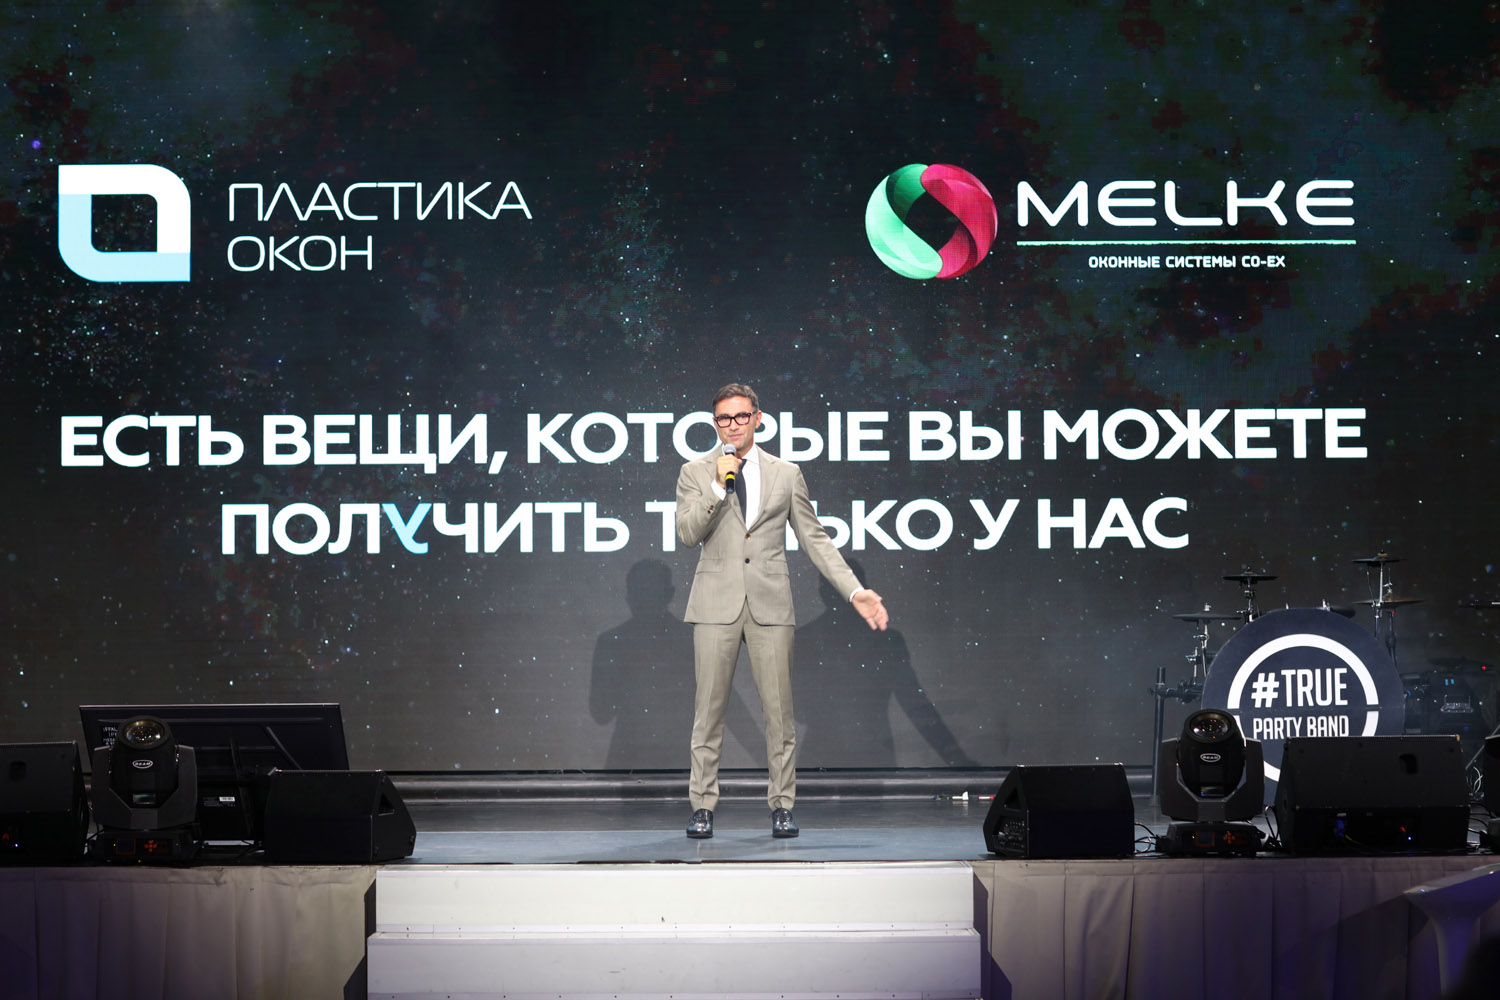 Петюшин Владимир Анатольевич открывает дилерскую конференцию компании Пластика Окон в Санкт Петербурге